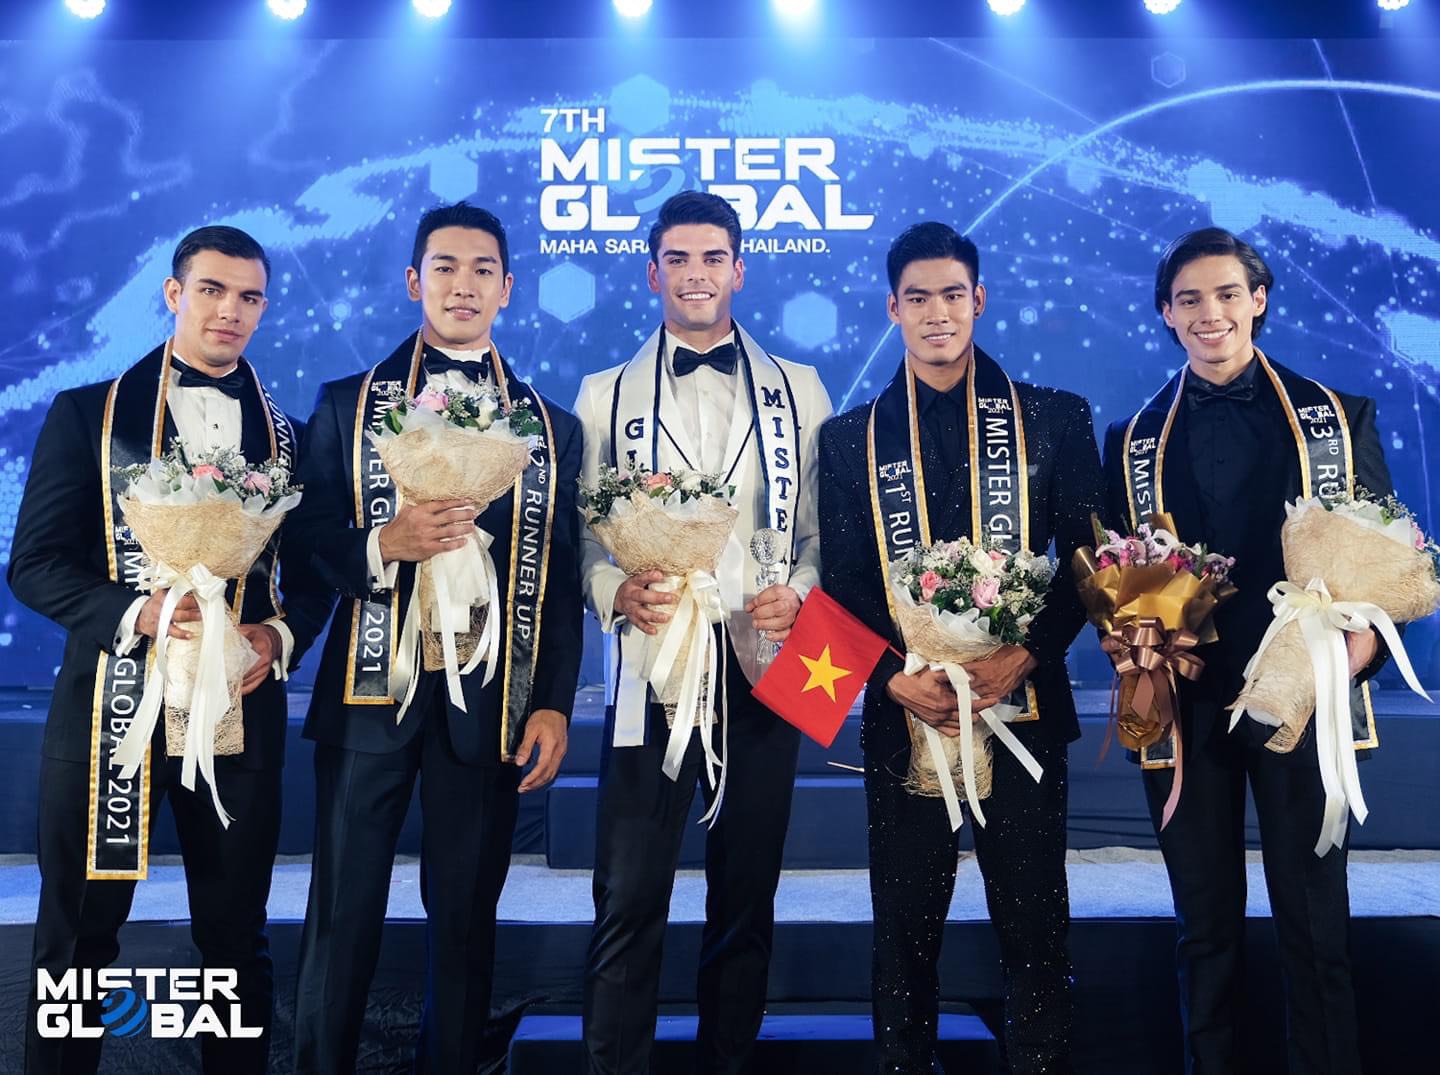 Gặp sự cố khi trình diễn trang phục dân tộc, Danh Chiếu Linh bất ngờ đăng quang ngôi vị Á vương 1 Mister Global mùa thứ 7 - Hình 2